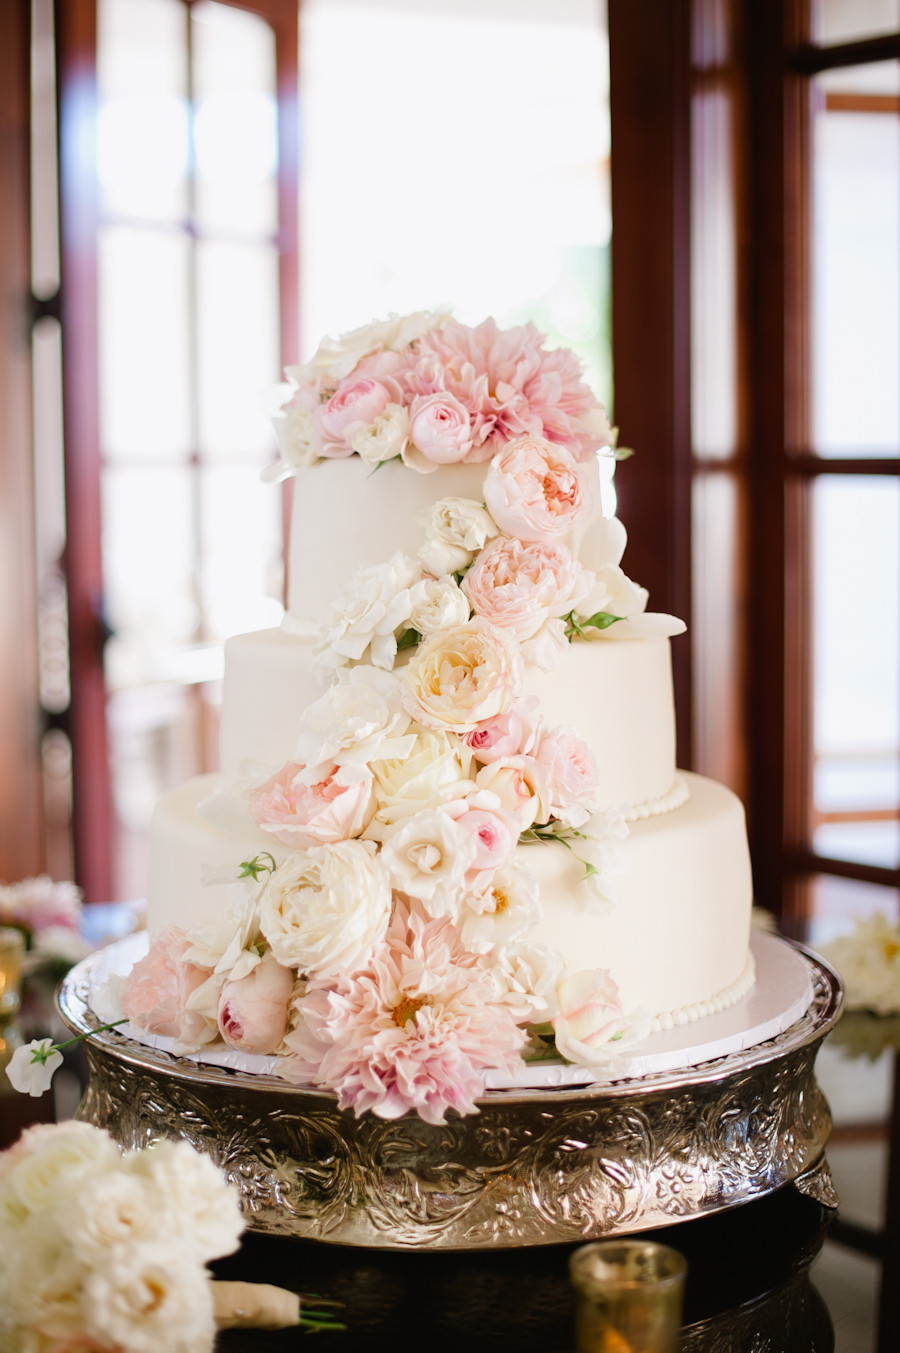 Fresh Flowers On Wedding Cake
 Wedding Cake with Fresh Flowers Elizabeth Anne Designs